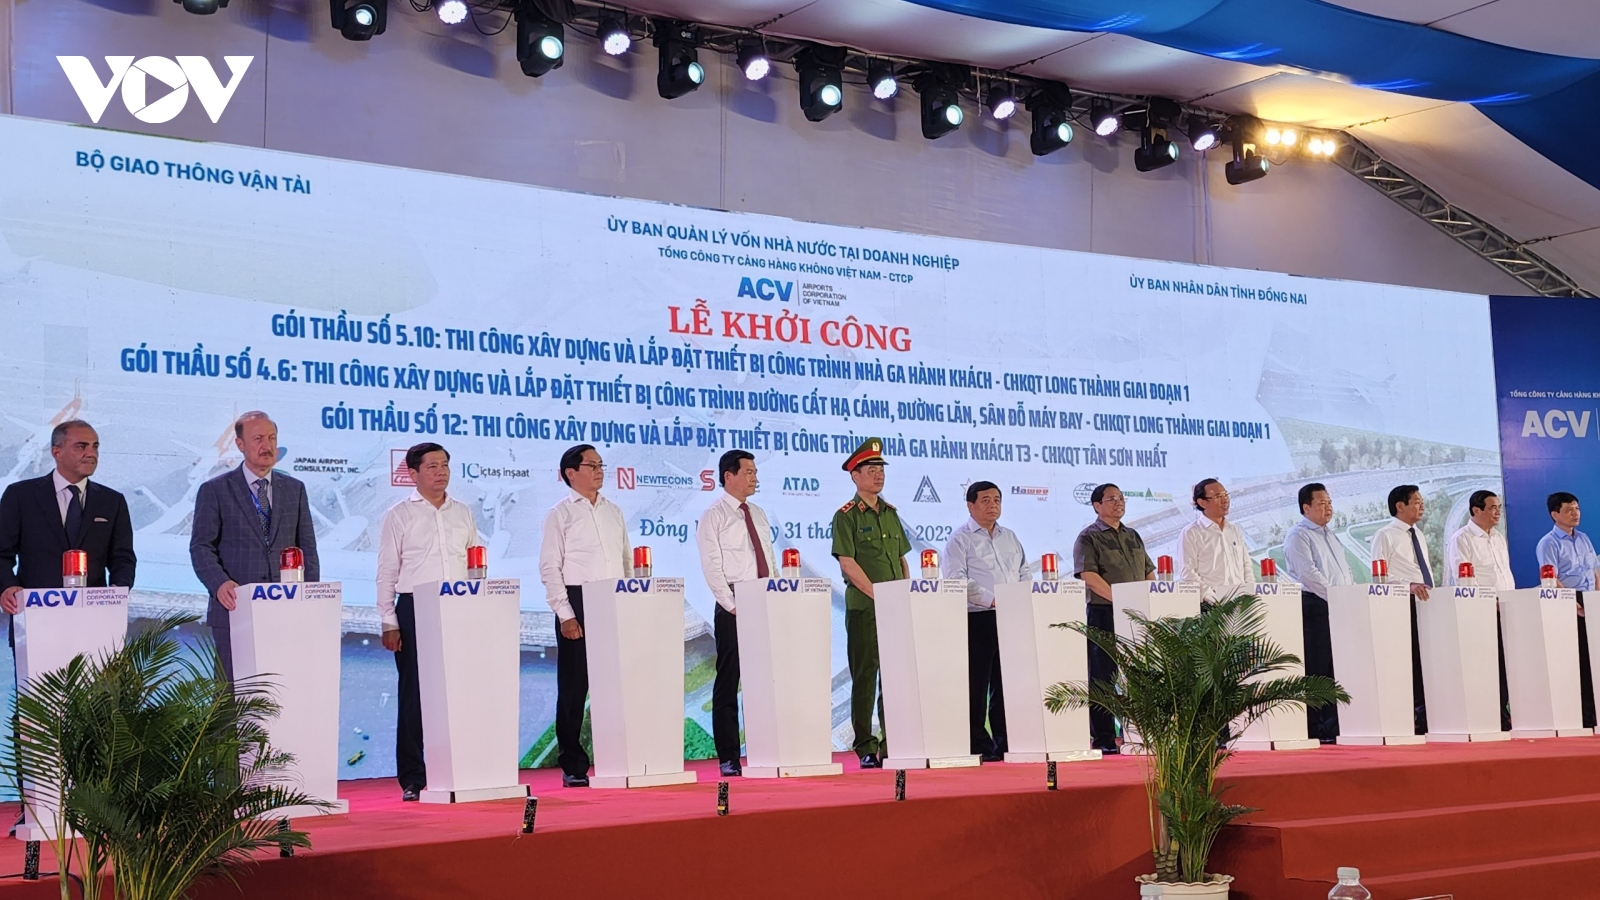 Thủ tướng phát lệnh khởi công 3 gói thầu sân bay Long Thành và Tân Sơn Nhất